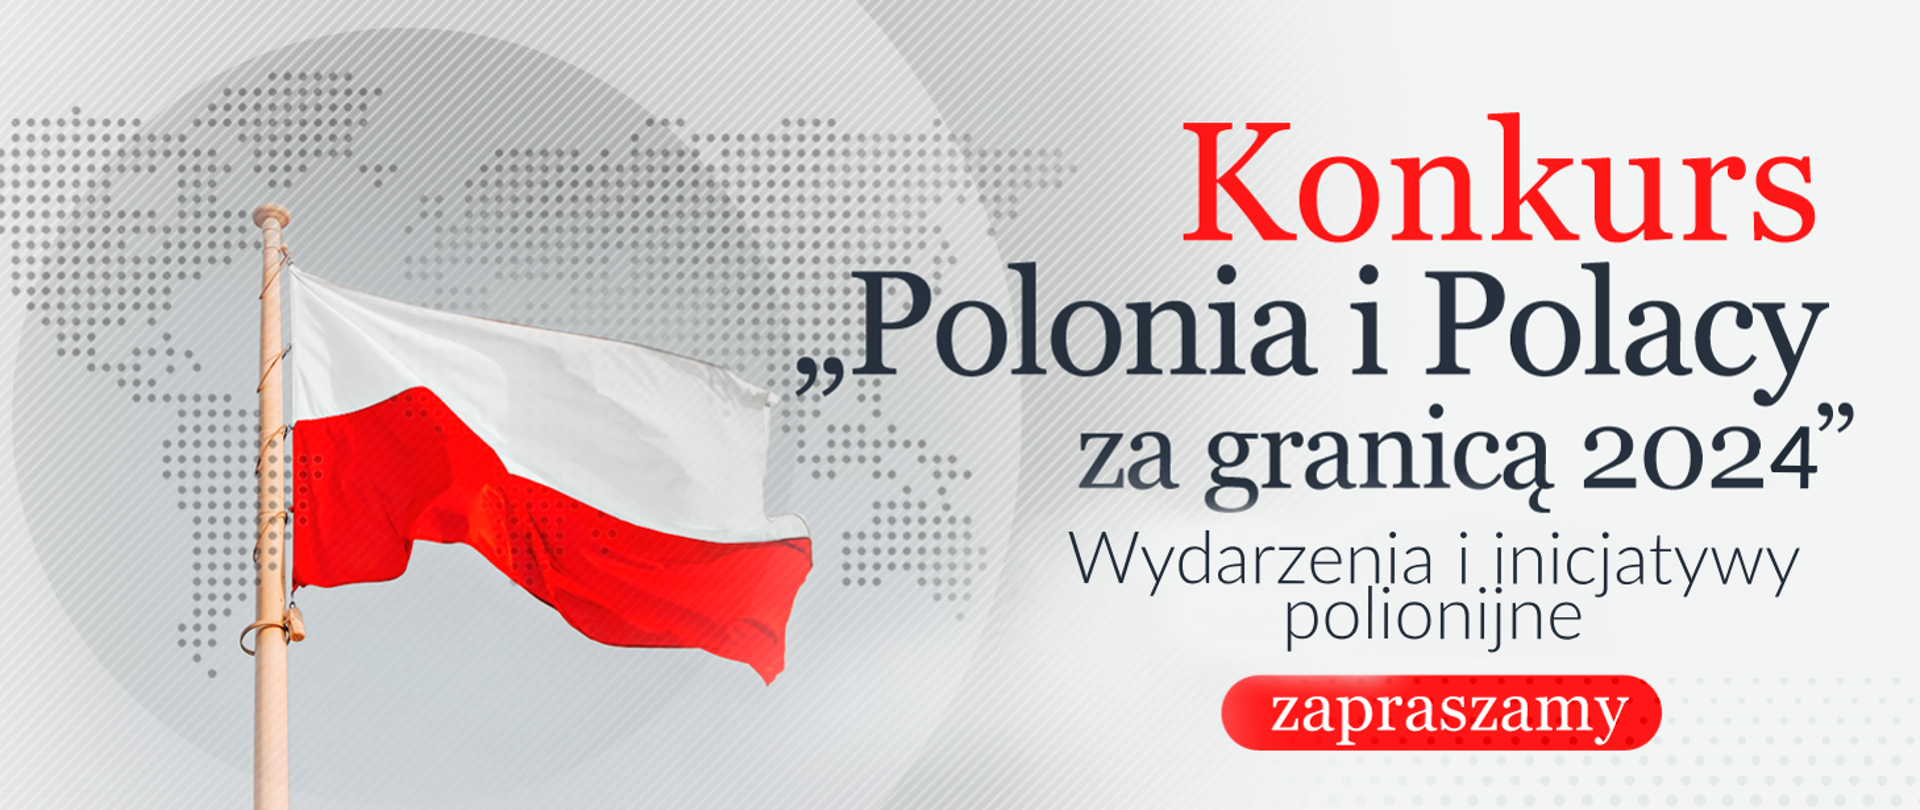 Polonia i Polacy za Granicą 2024 - wydarzenia i inicjatywy polonijne 